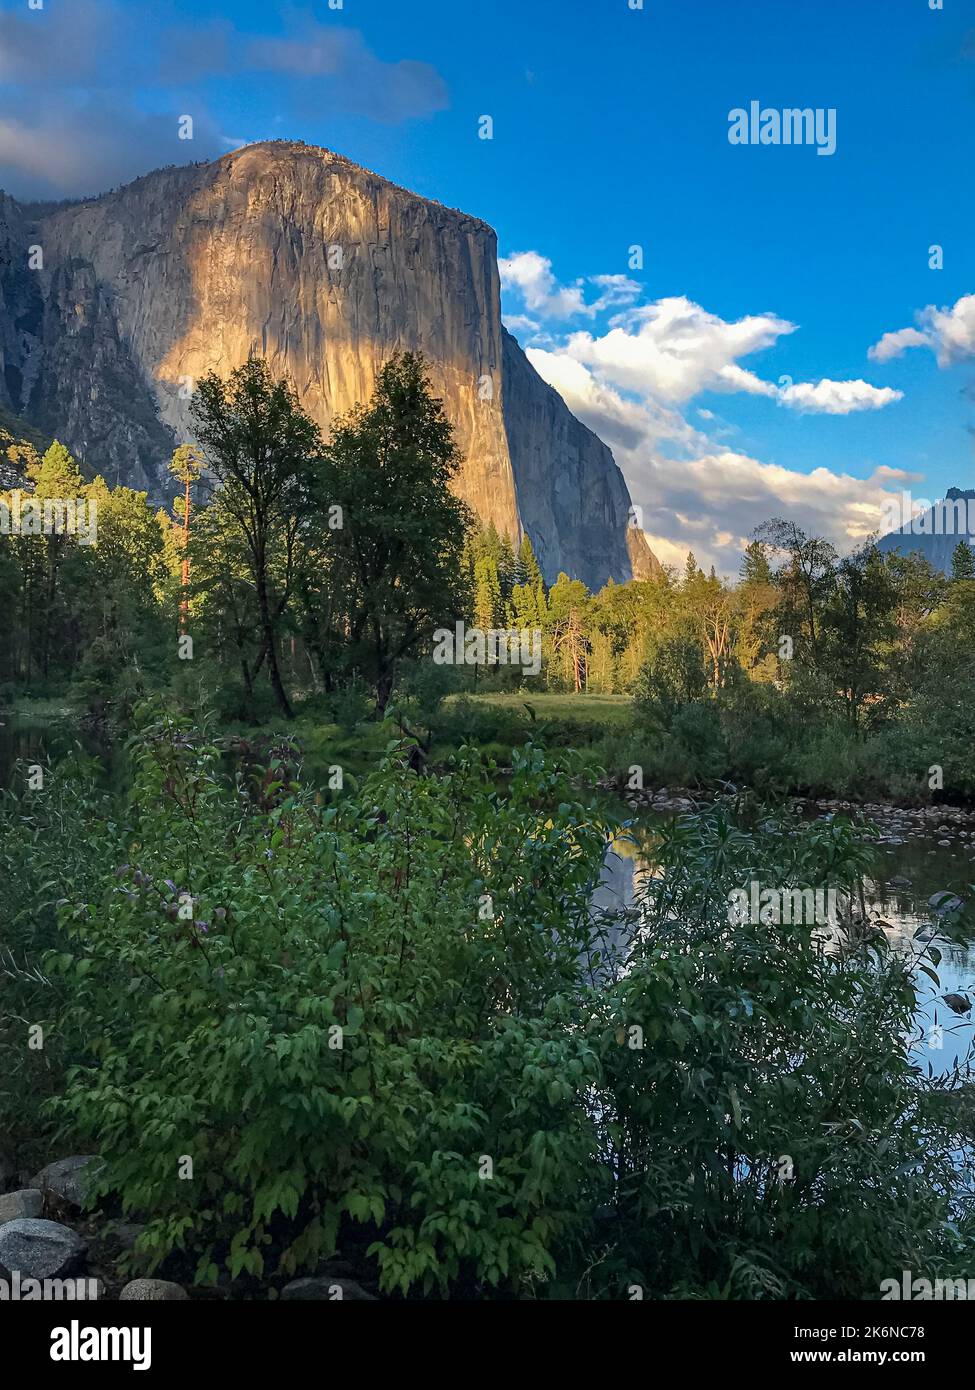 El Capitan è immerso nella luce del tardo pomeriggio con il fiume Merced sottostante, Yosemite National Park, California Foto Stock